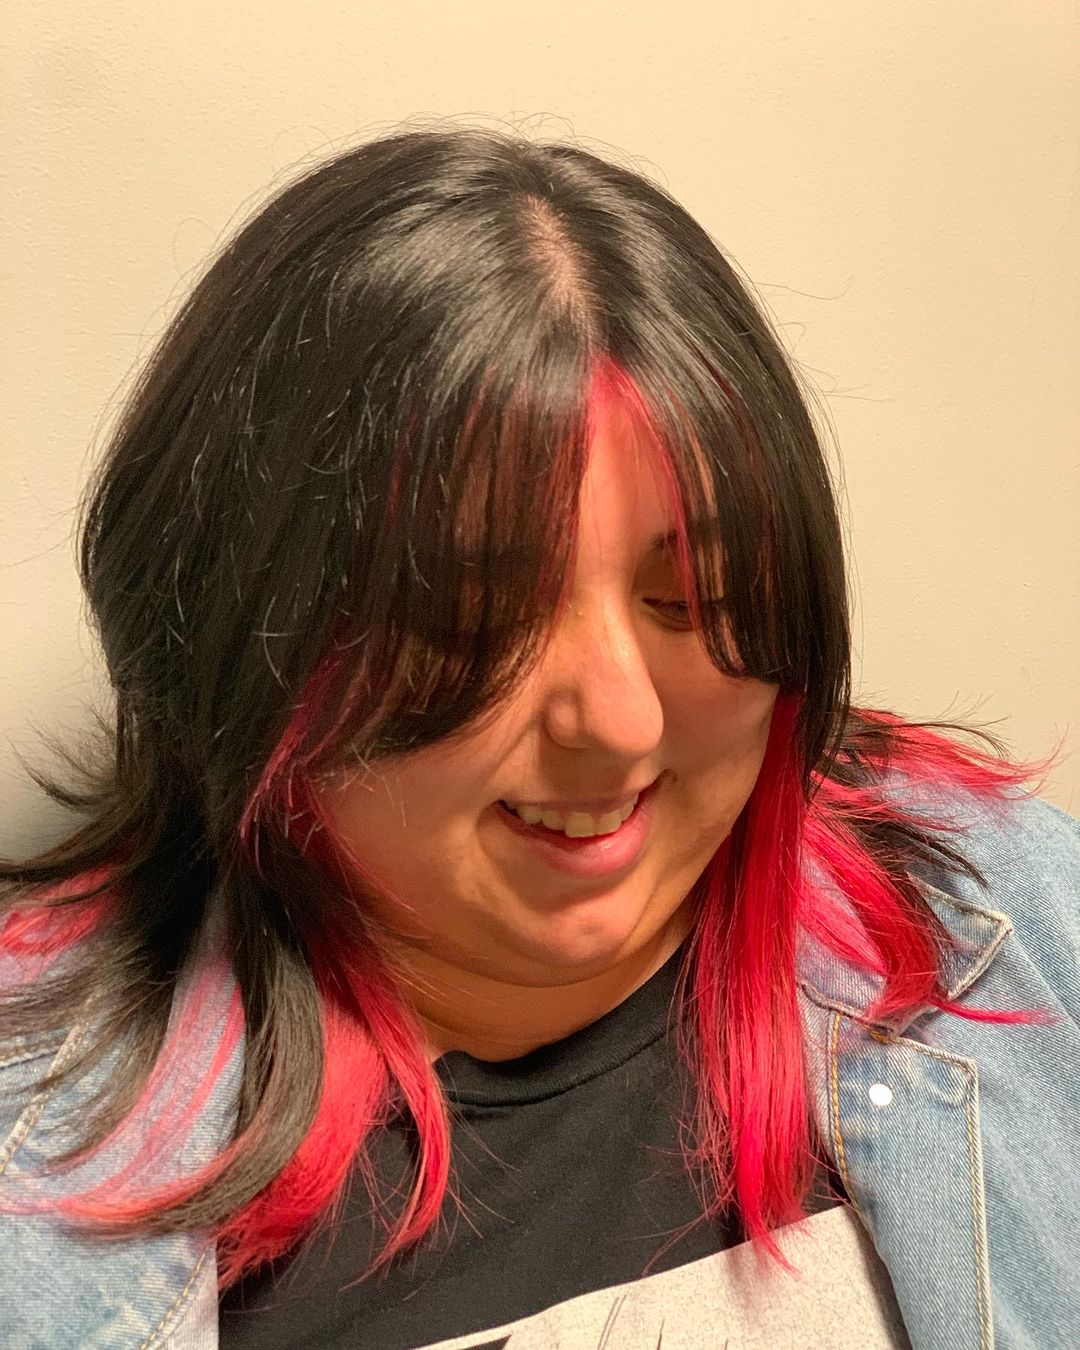 cheveux noirs avec des pointes rouges rosées